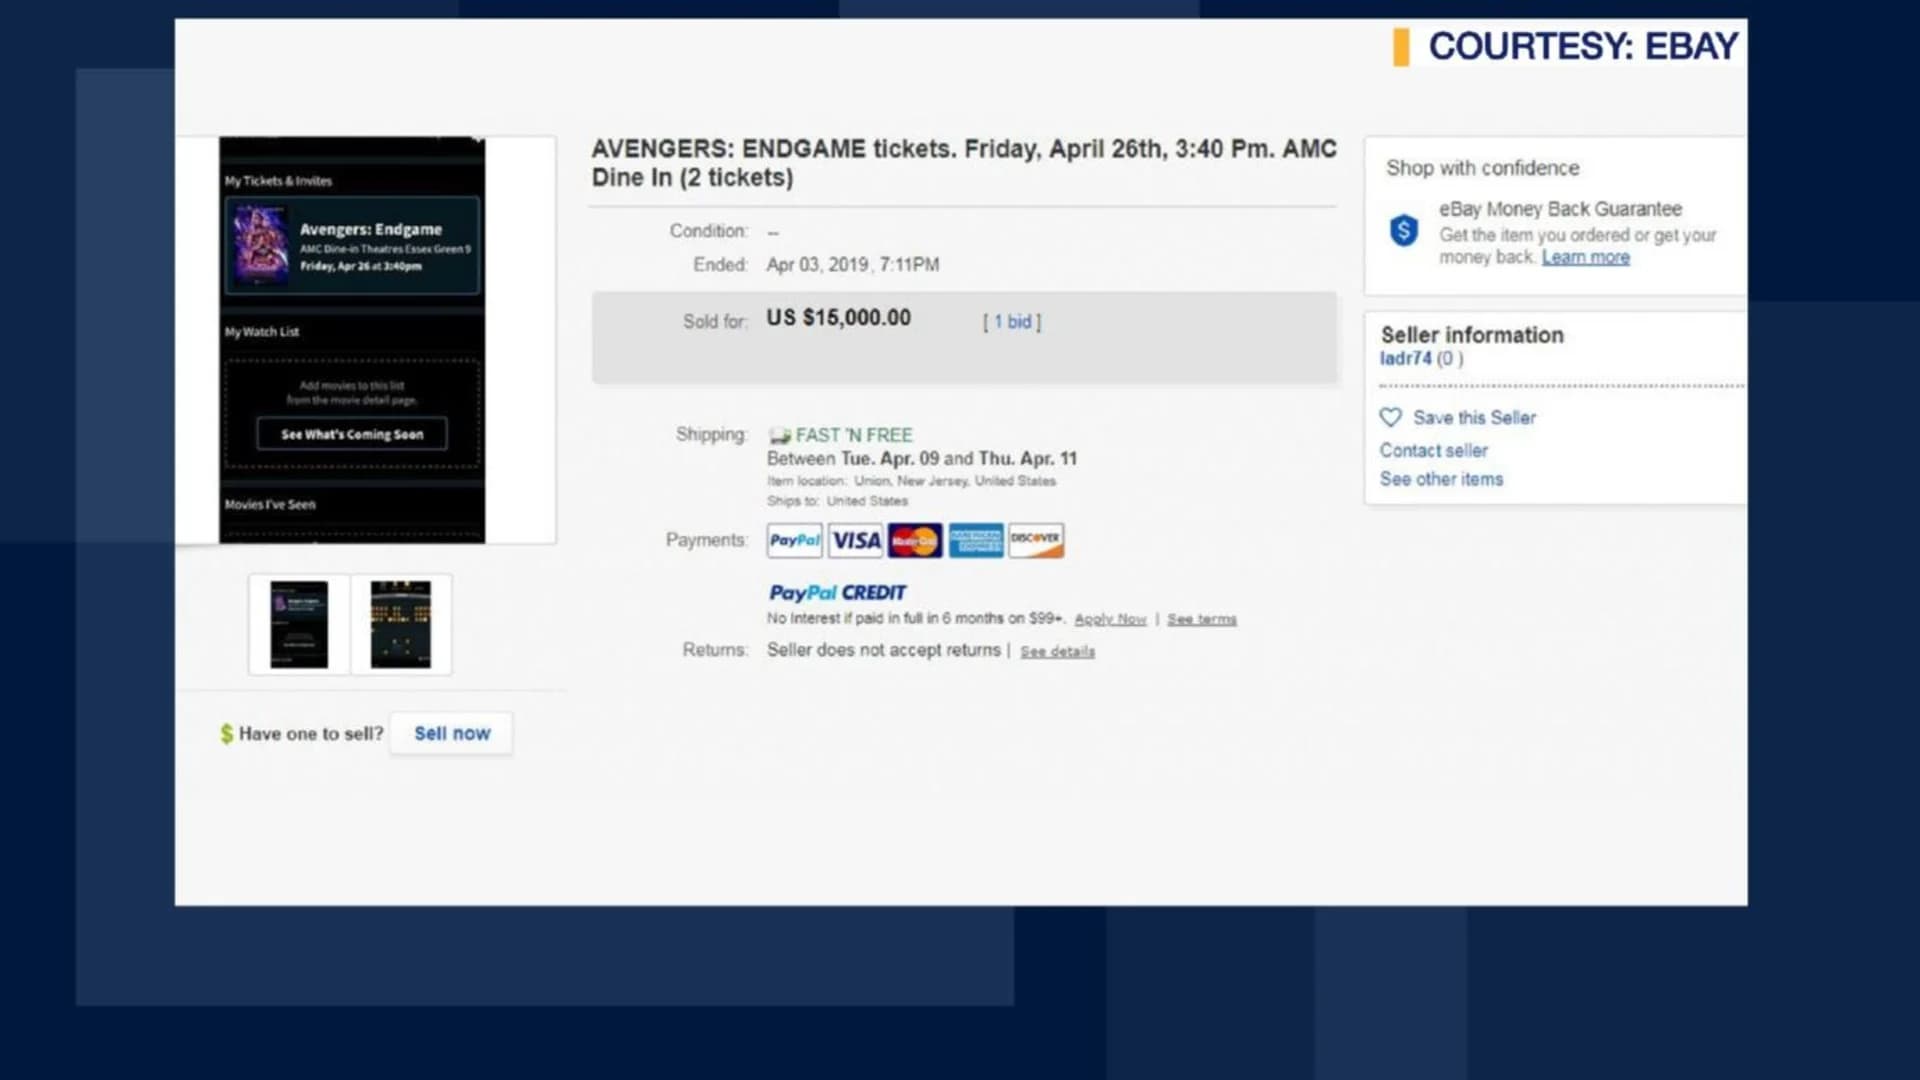 ‘Avengers: Endgame’ ticket set sells for $15K on eBay for NJ showing